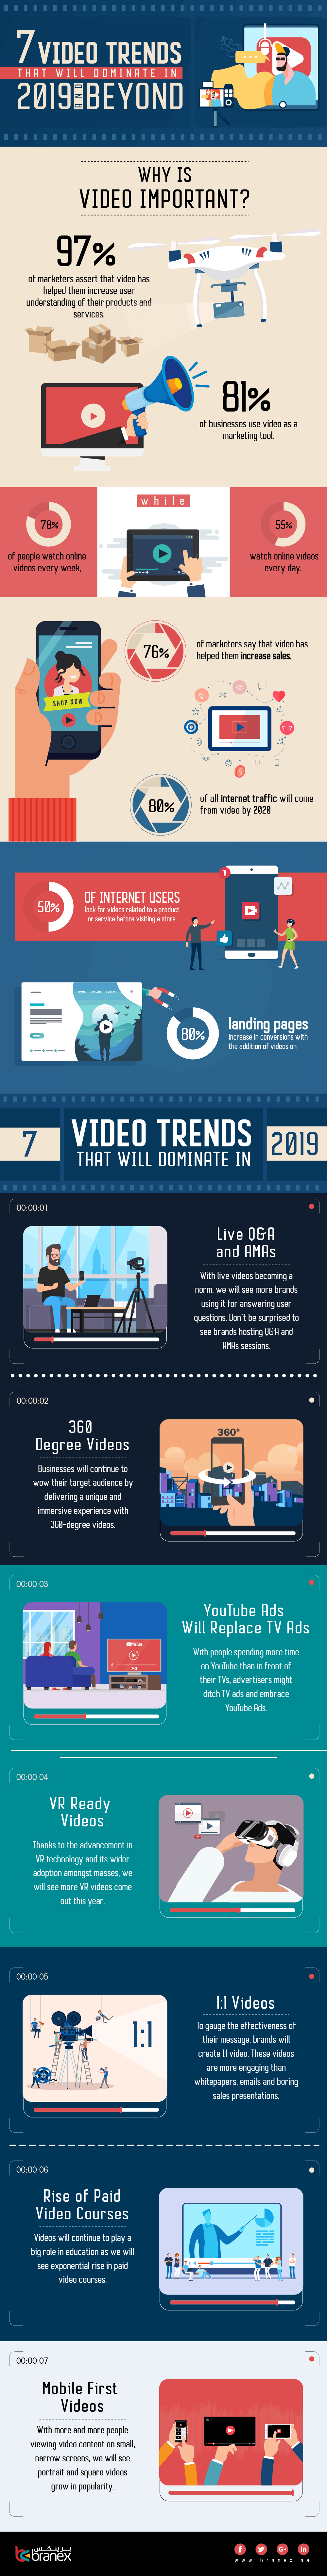 video-trends-2019